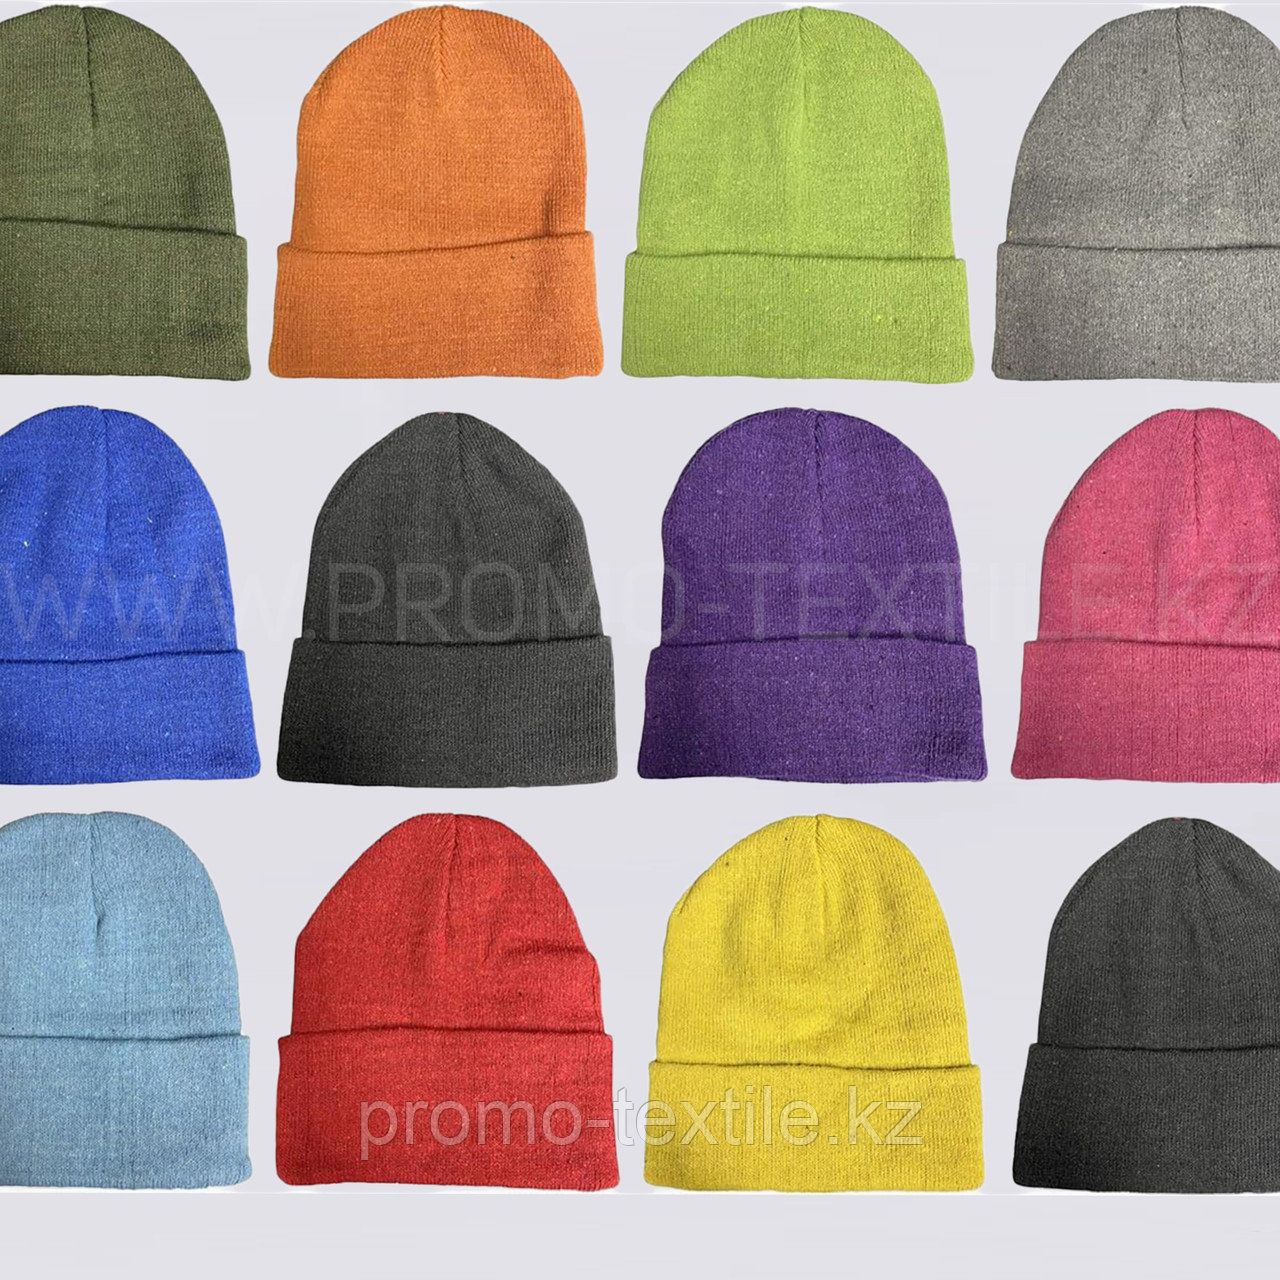 Зимние шапки от производителя | Пошив шапок на заказ